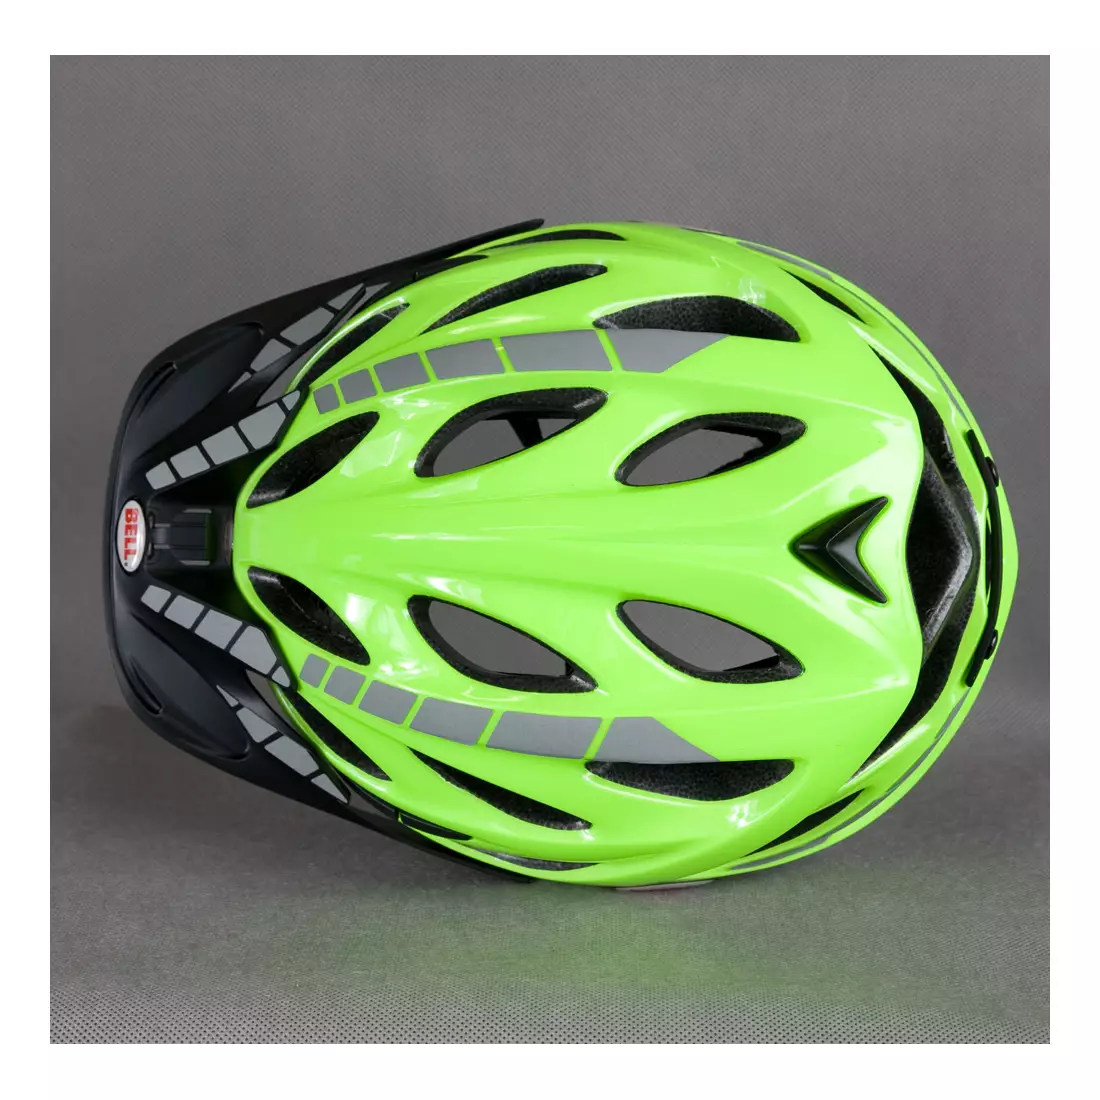 BELL - Casca de bicicleta MUNI, culoare: Fluor